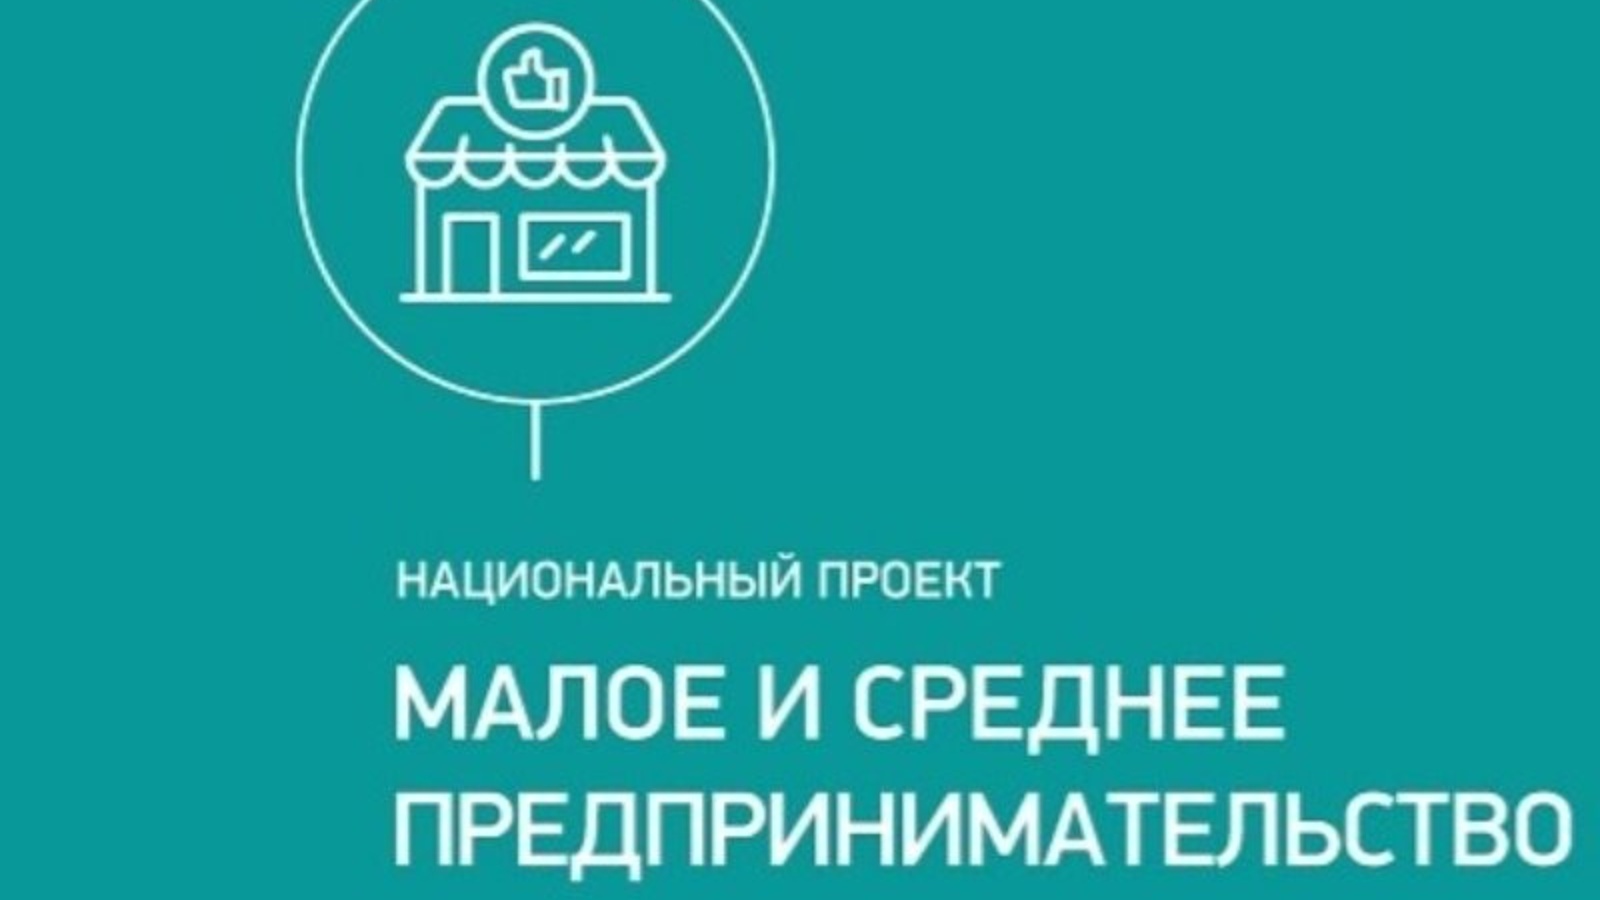 Агропредприниматели Башкирии получили гранты на общую сумму в 125,4 млн рублей